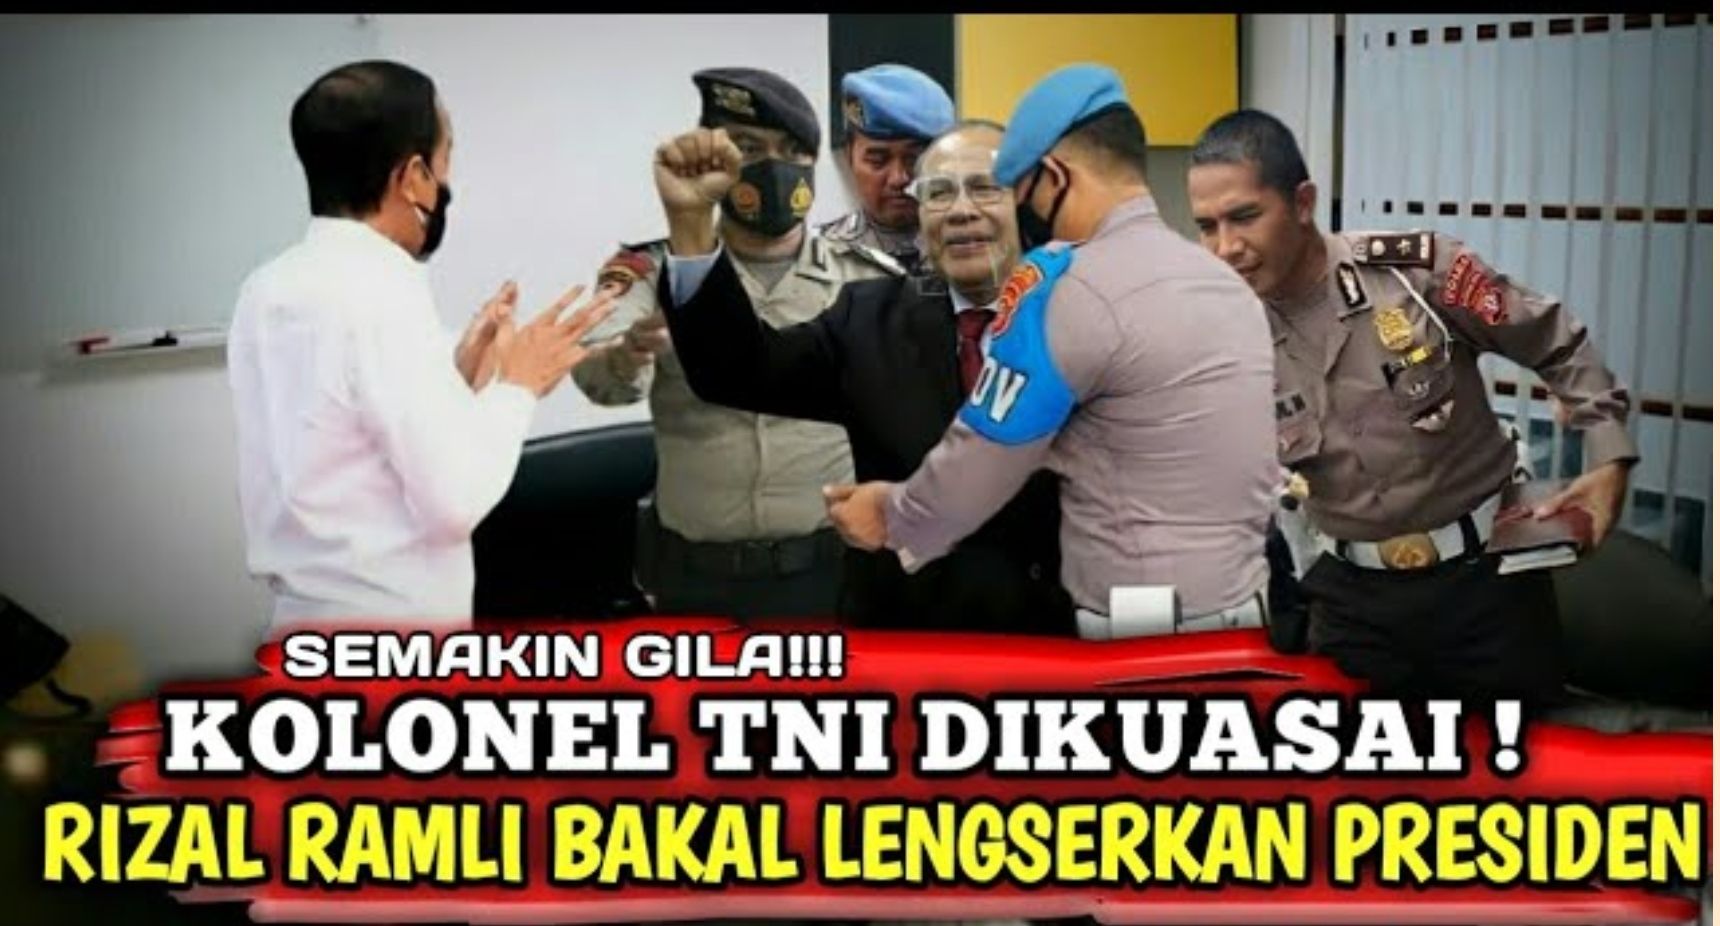 Thumbnail video yang mengisukan Rizal Ramli menguasai ratusan ribu TNI dan siap melengserkan Presiden Jokowi./Tangkapan layar YouTube PAKDE TV/